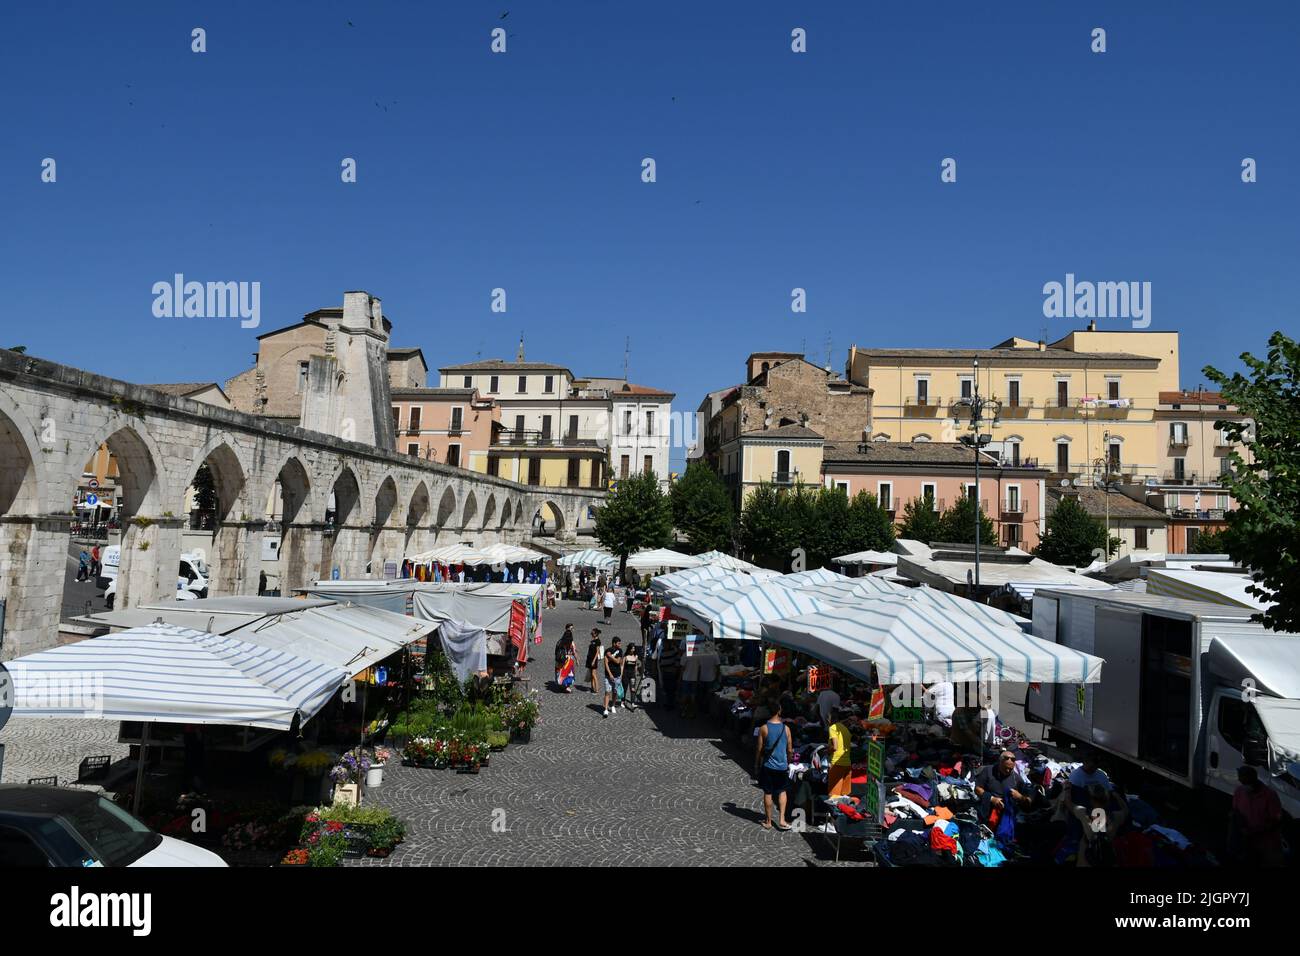 The market square of Sulmona, an Italian village in the Abruzzo region. Stock Photo